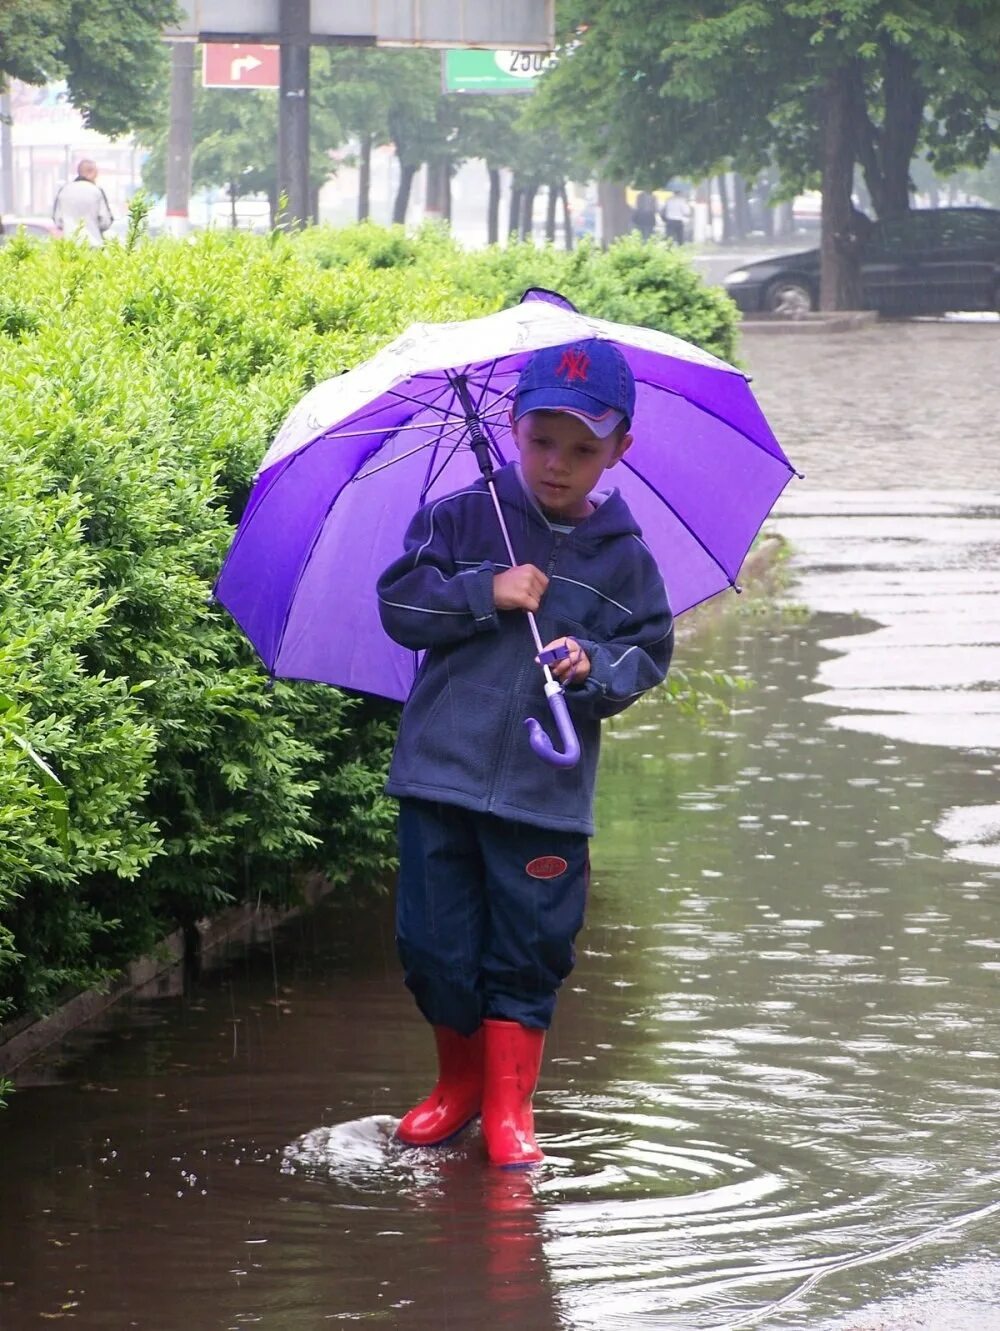 12 без дождя. Мальчик с зонтиком. Зонтик для детей. Дети под зонтиком. Дети под зонтом.